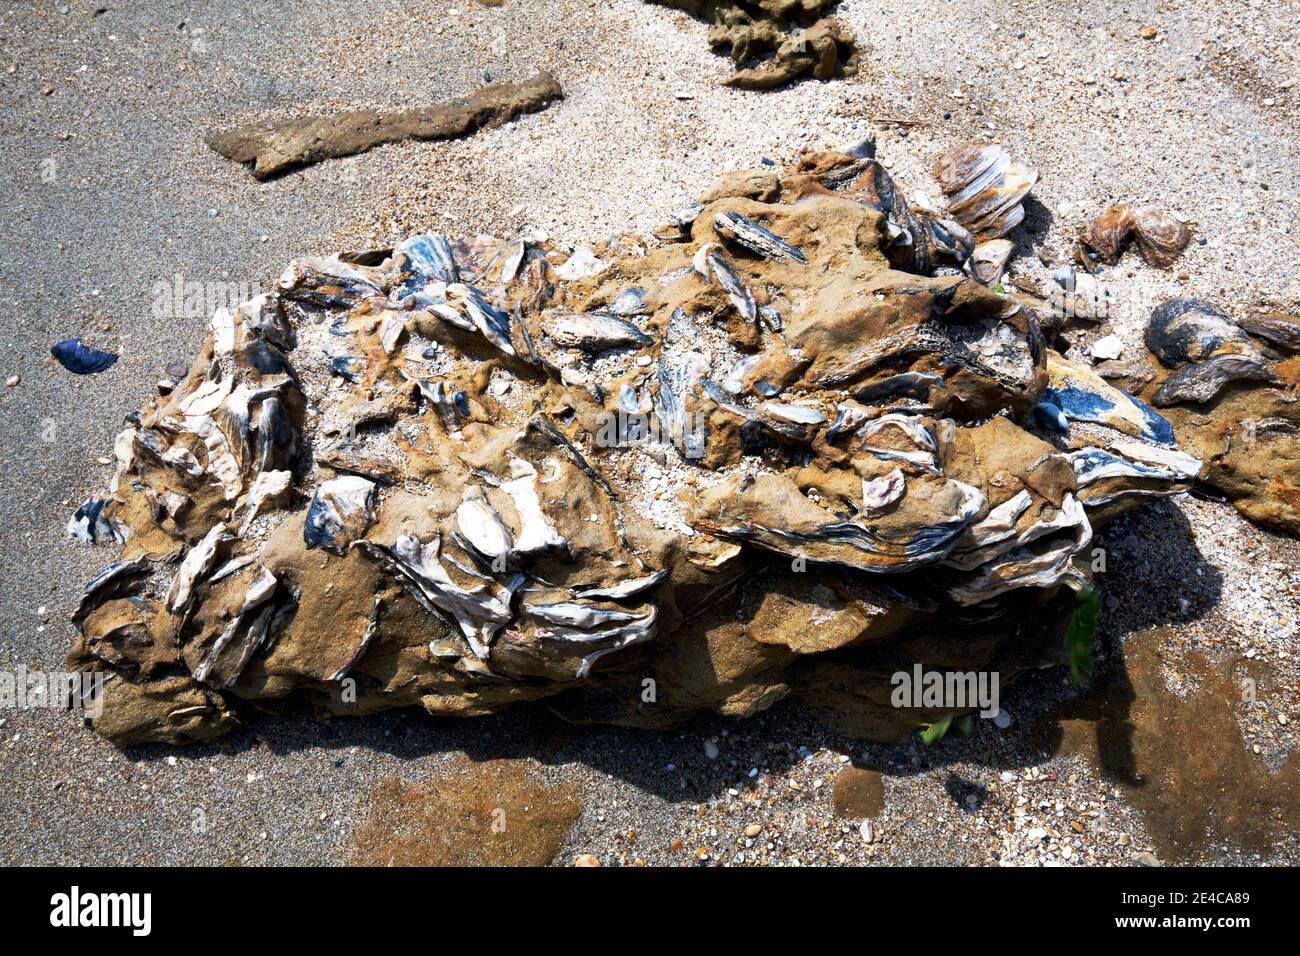 Coquillages fossilisés de Pycnodonte dans un rocher de grès, sur la plage dans le centre de la Grèce Banque D'Images